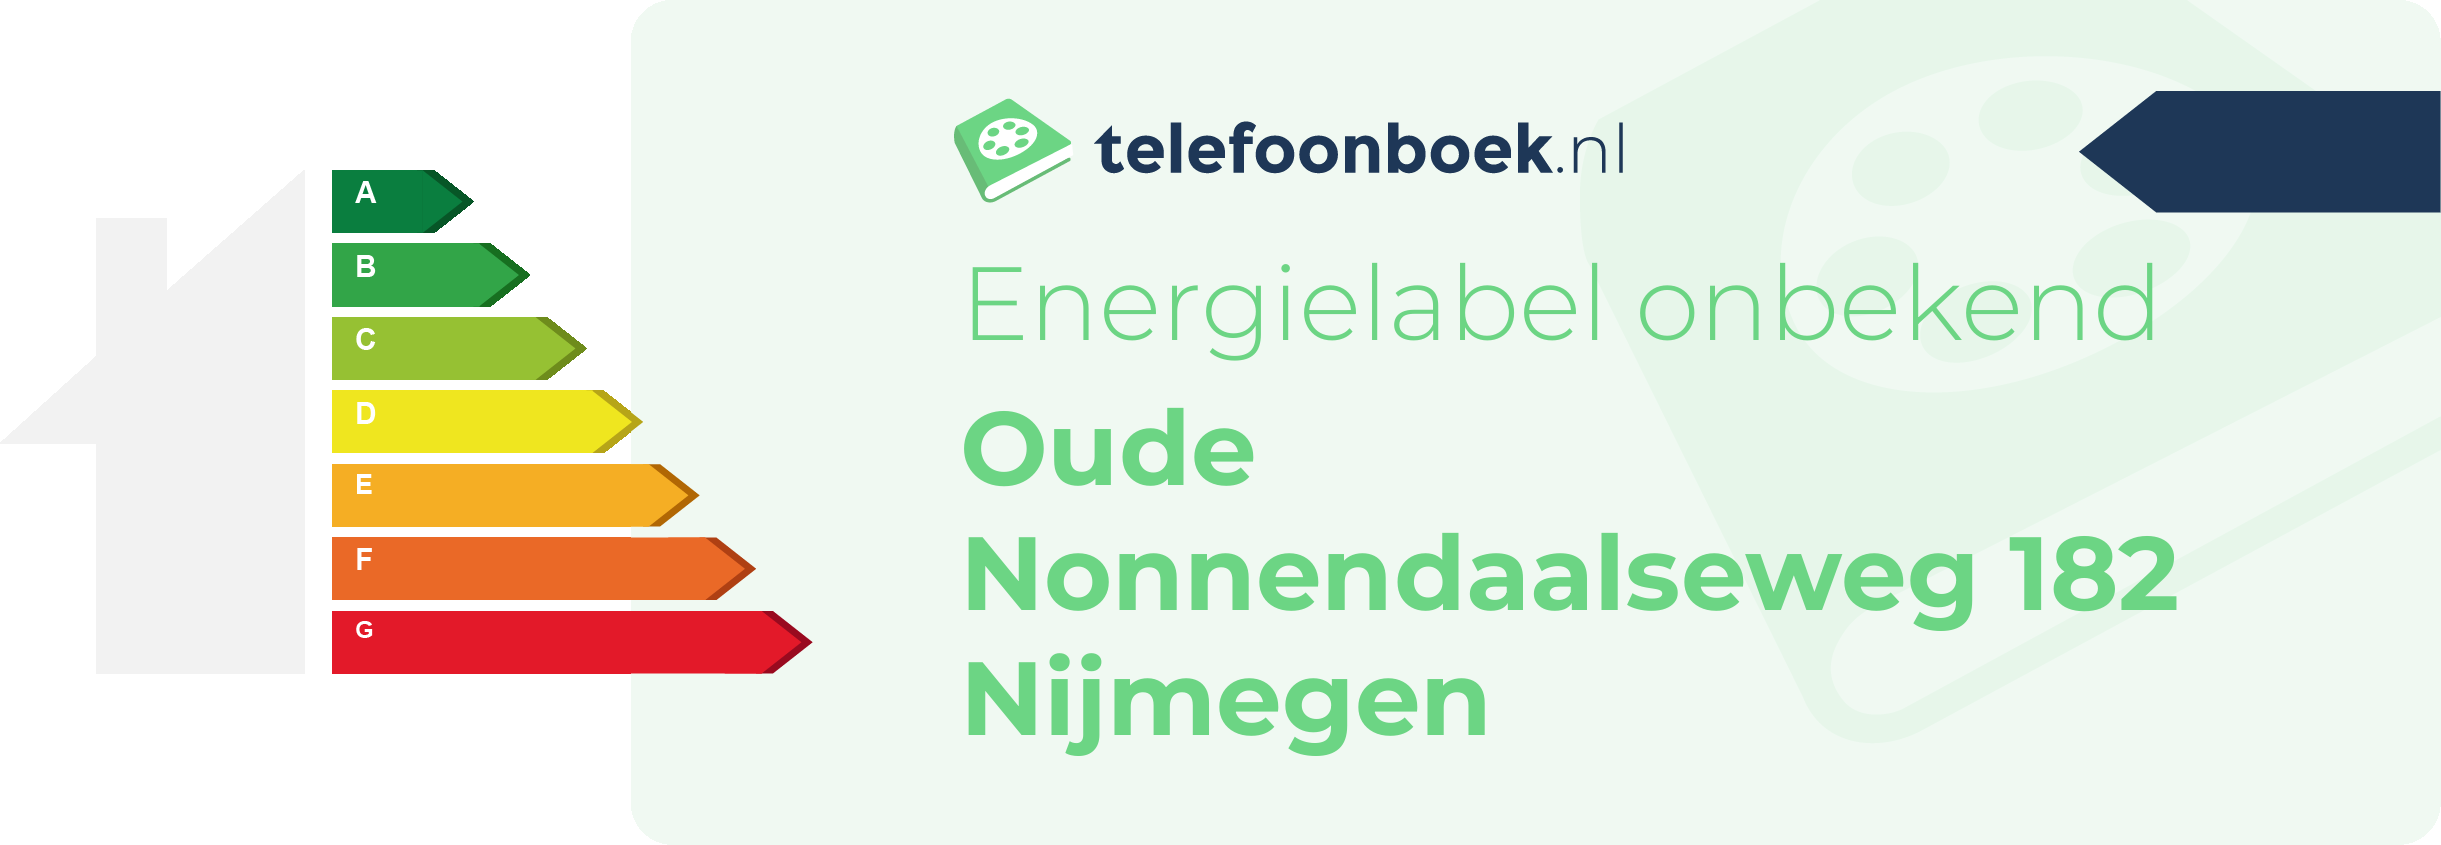 Energielabel Oude Nonnendaalseweg 182 Nijmegen